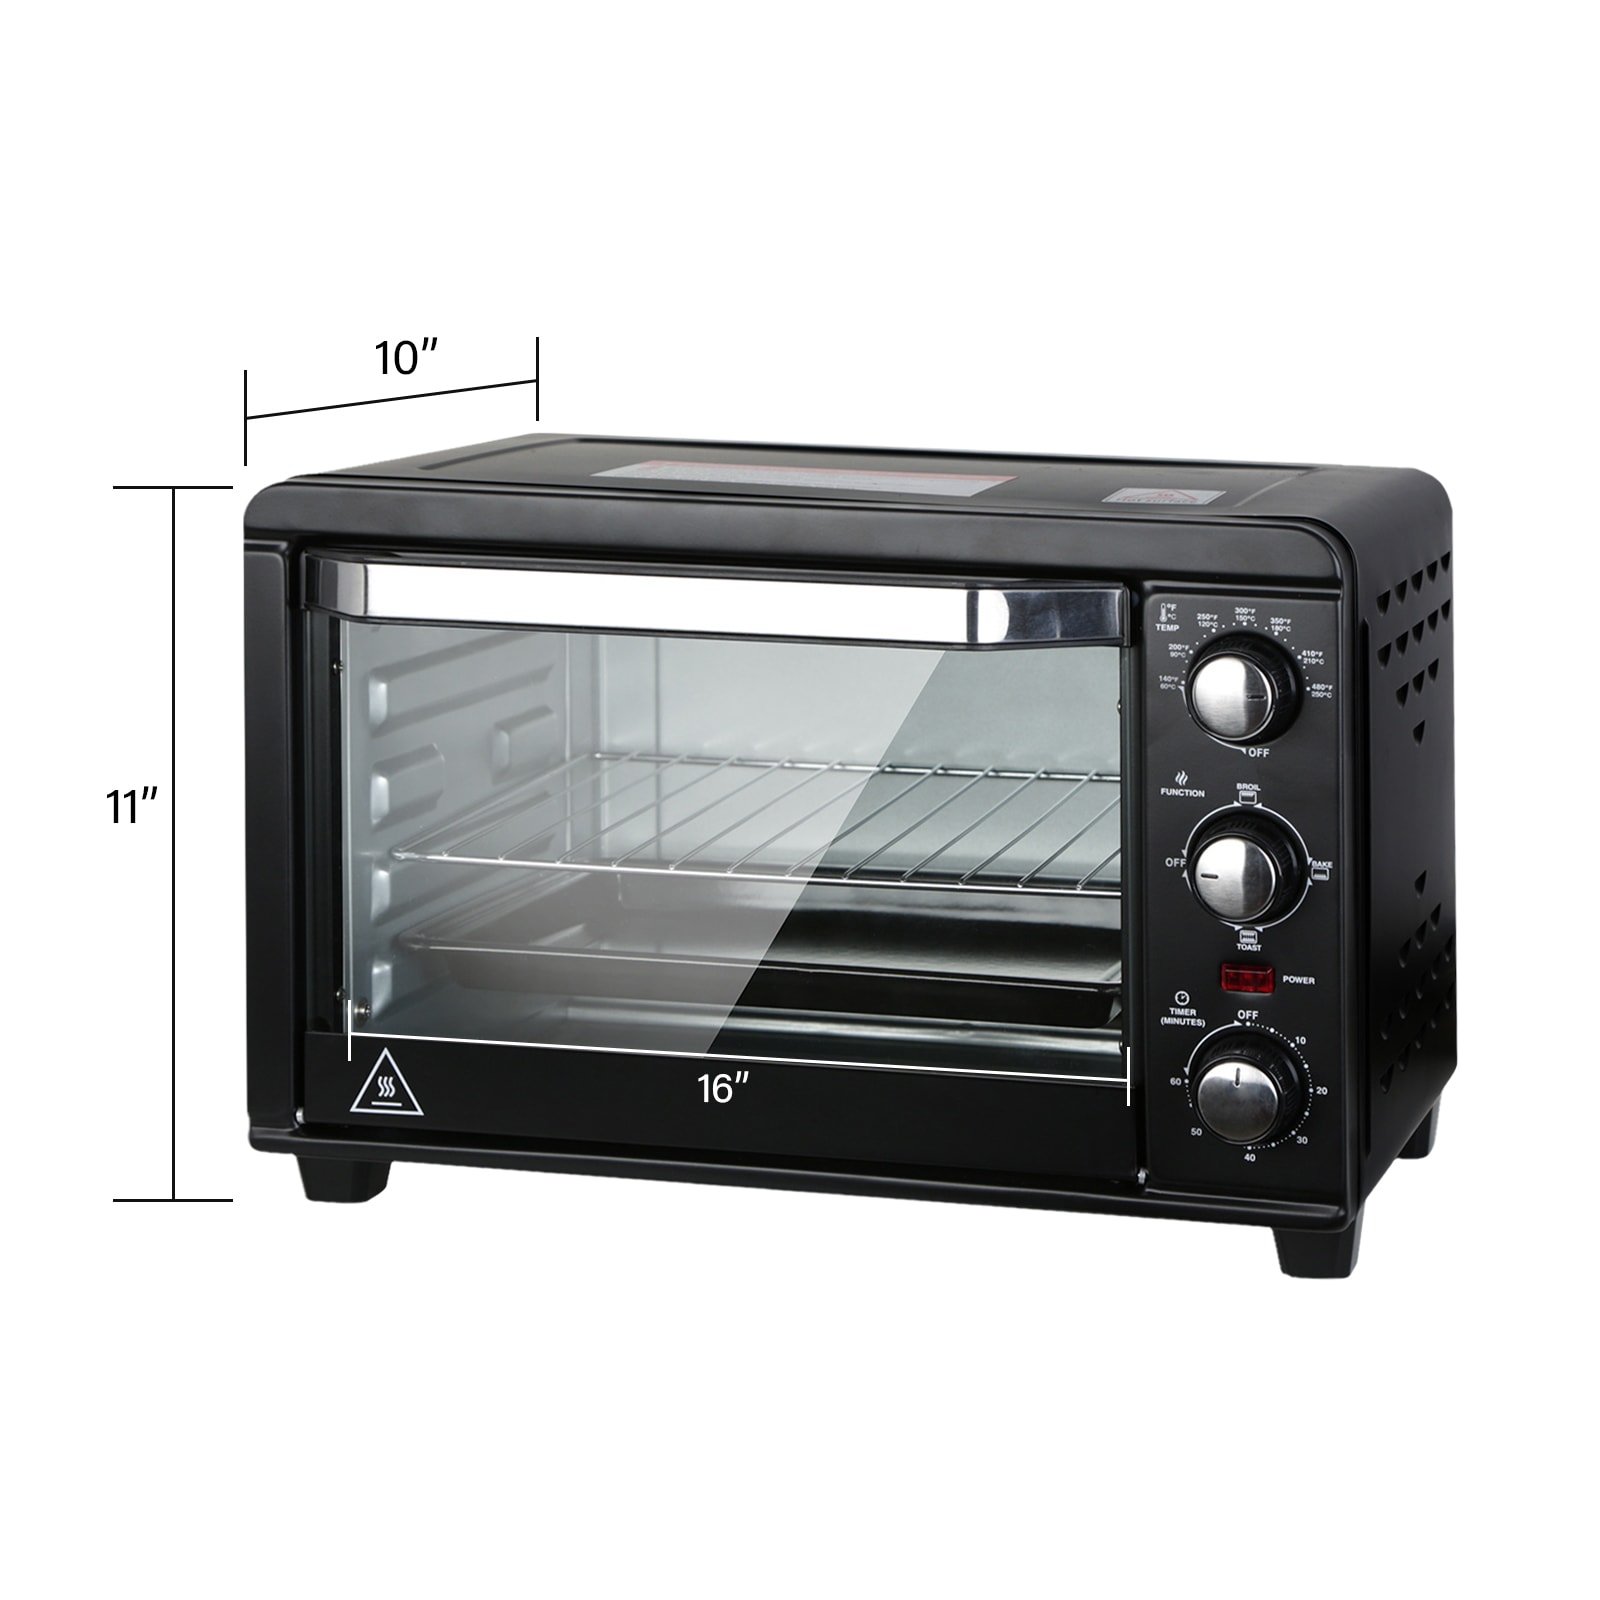 Chefman Auto-Stir Air Fryer Convection Oven, 11.6 qt - Baker's